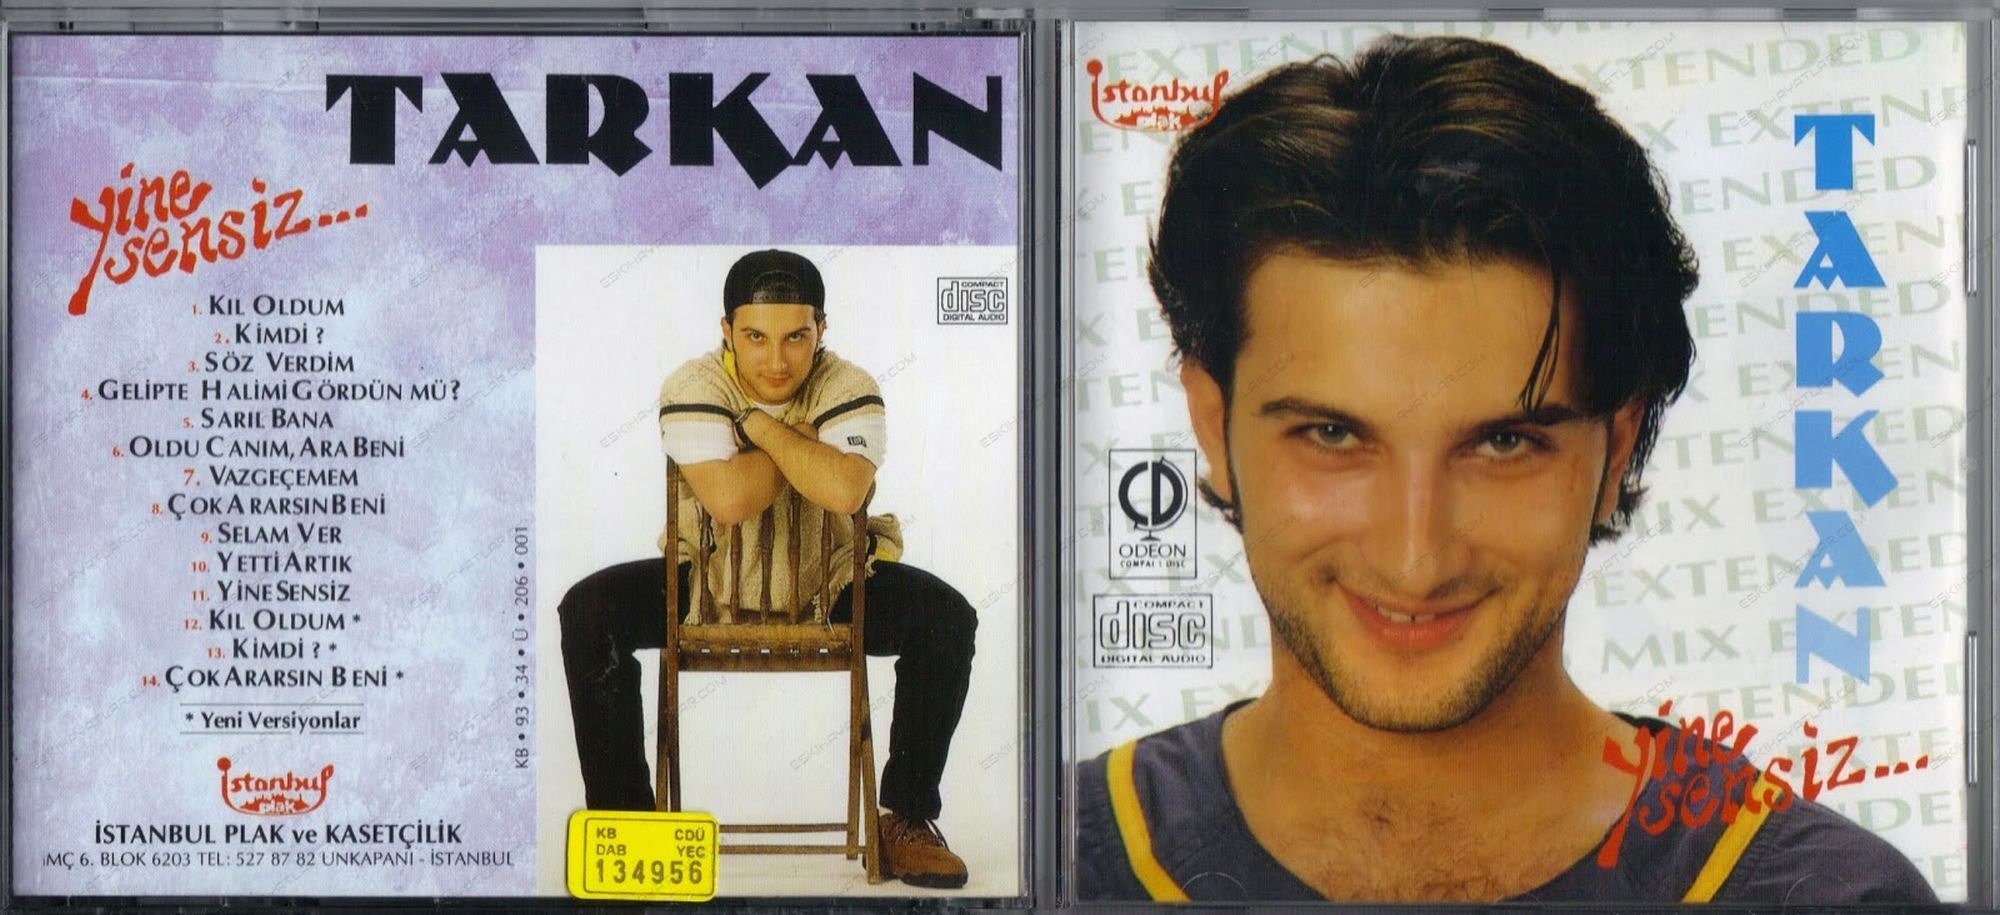 0146-tarkan-tevetoglu-1994-aacayipsin-albumu-nokta-dergisi-yine-sensiz-albumu-doksanlarda-kaset-satin-almak (10)